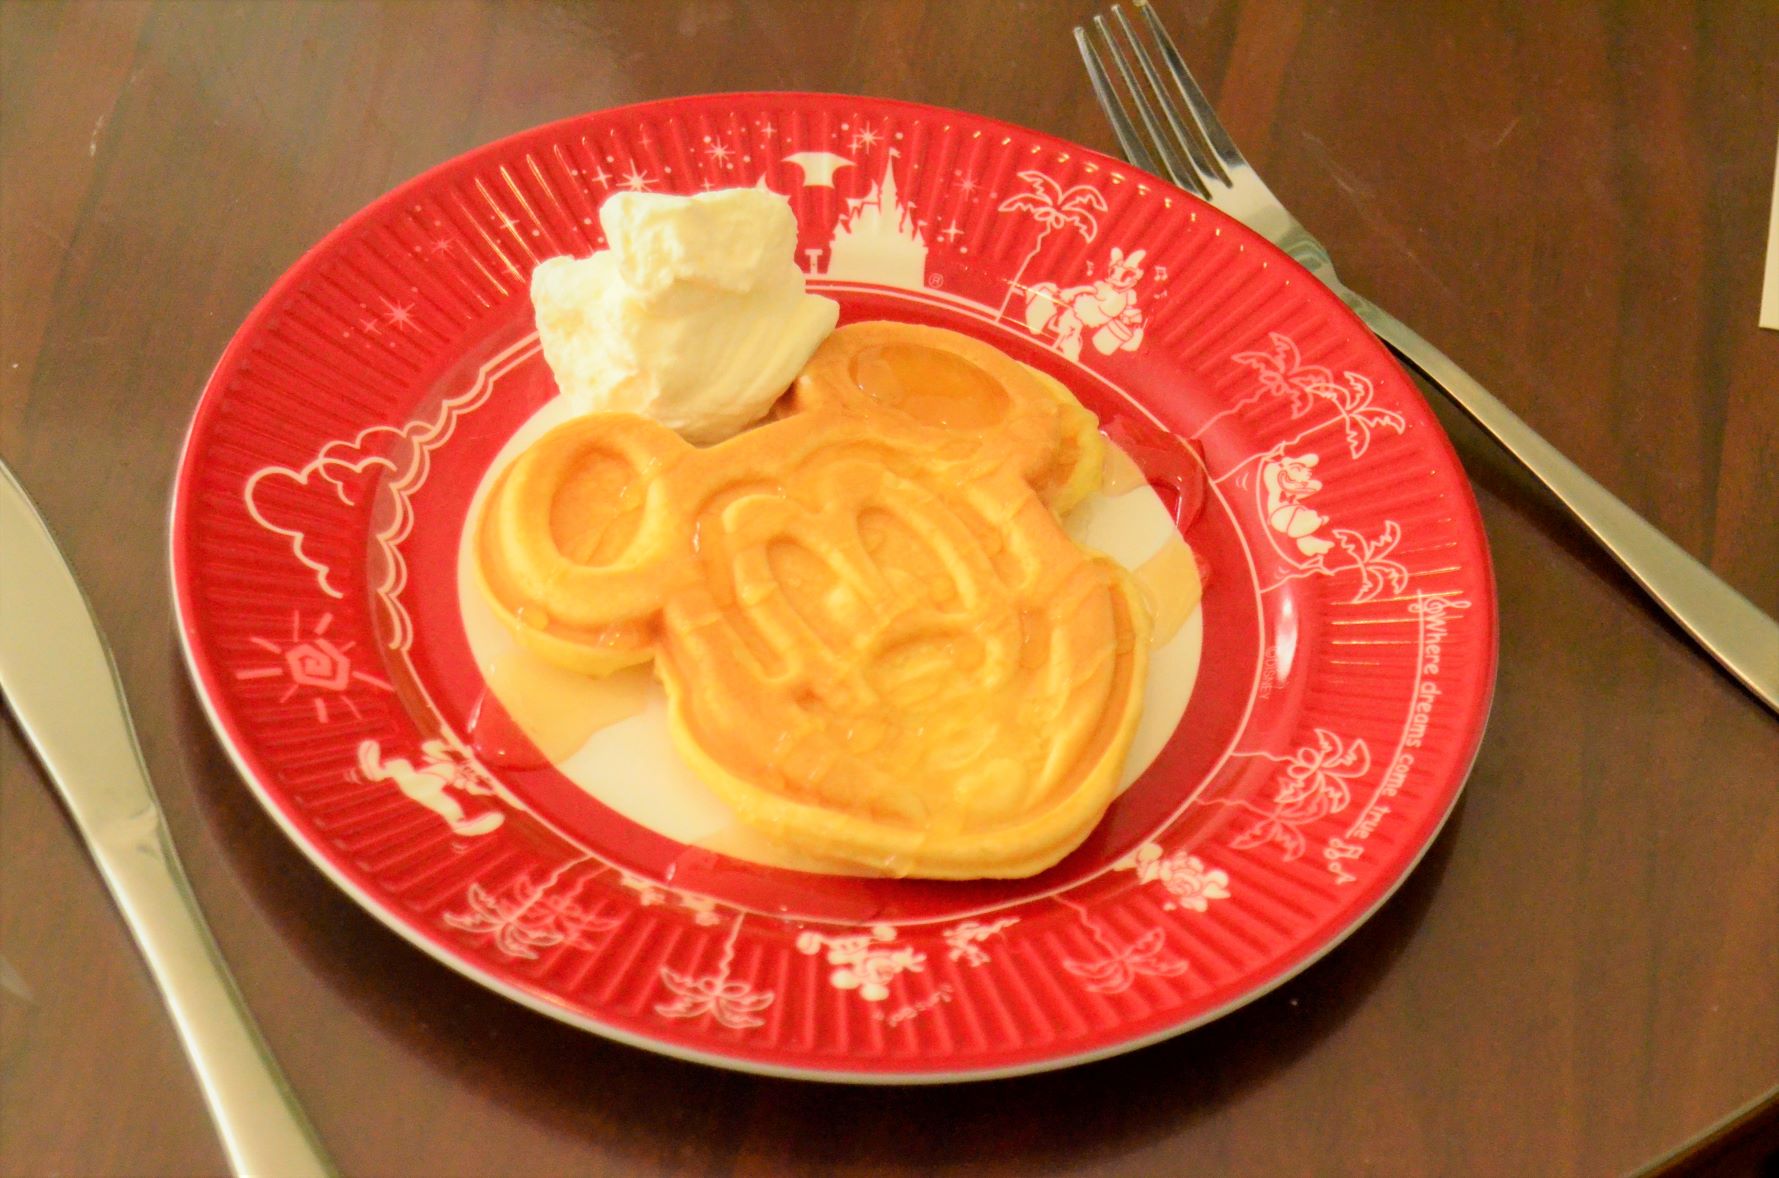 Mickey pancakes made at home